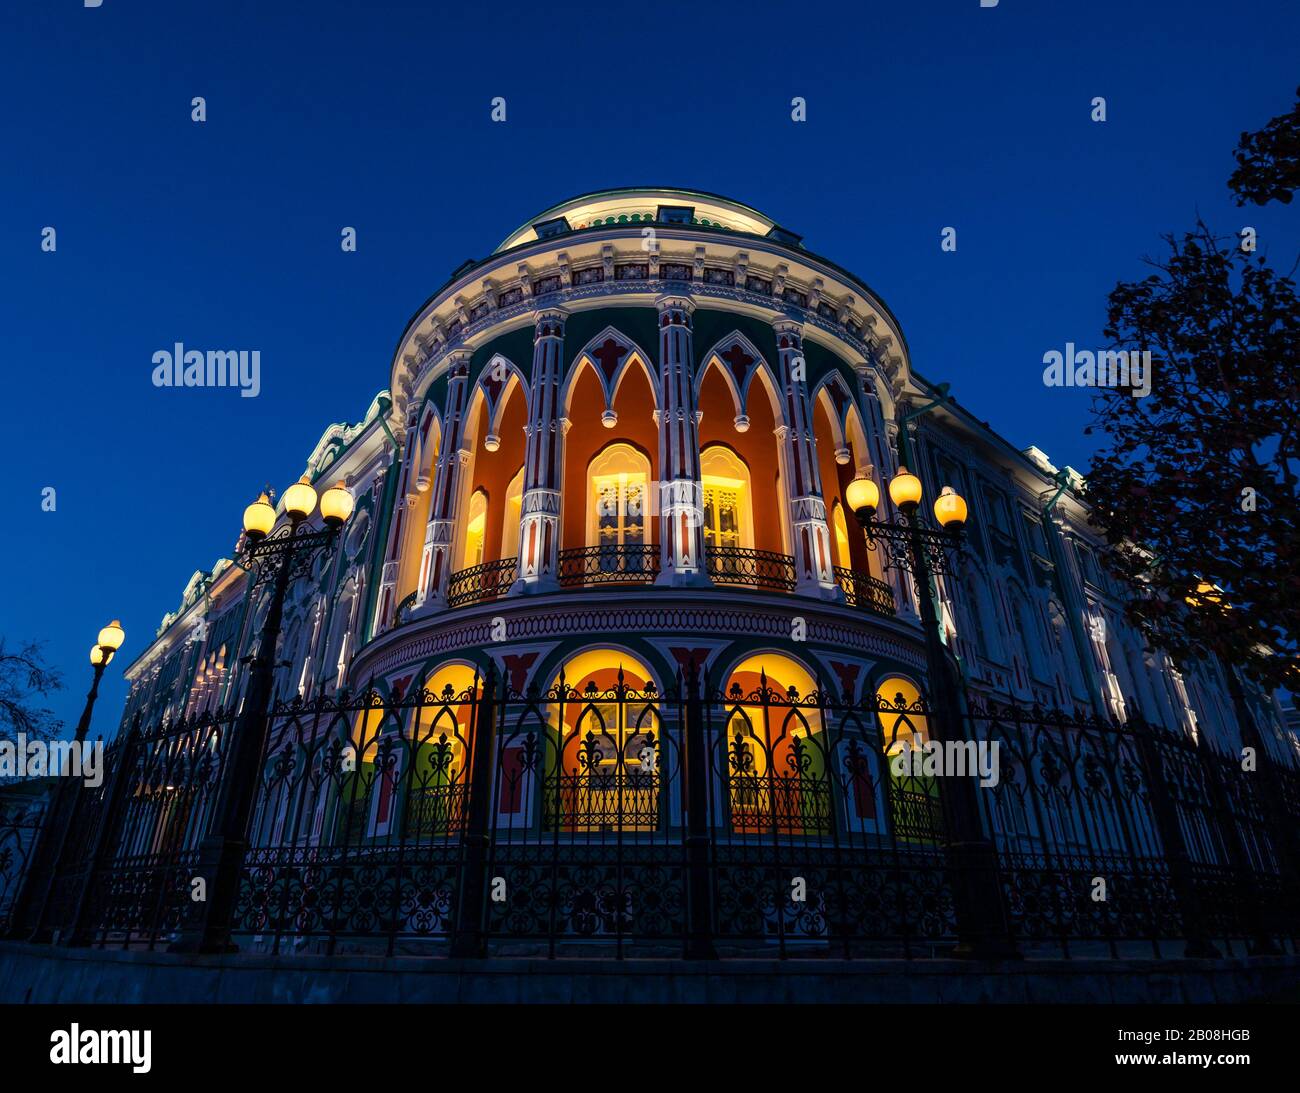 Das farbenfrohe historische Sevastyanova-Haus wurde nachts beleuchtet, Lenin-Allee, Jekaterinburg, Sibirien, Russische Föderation Stockfoto